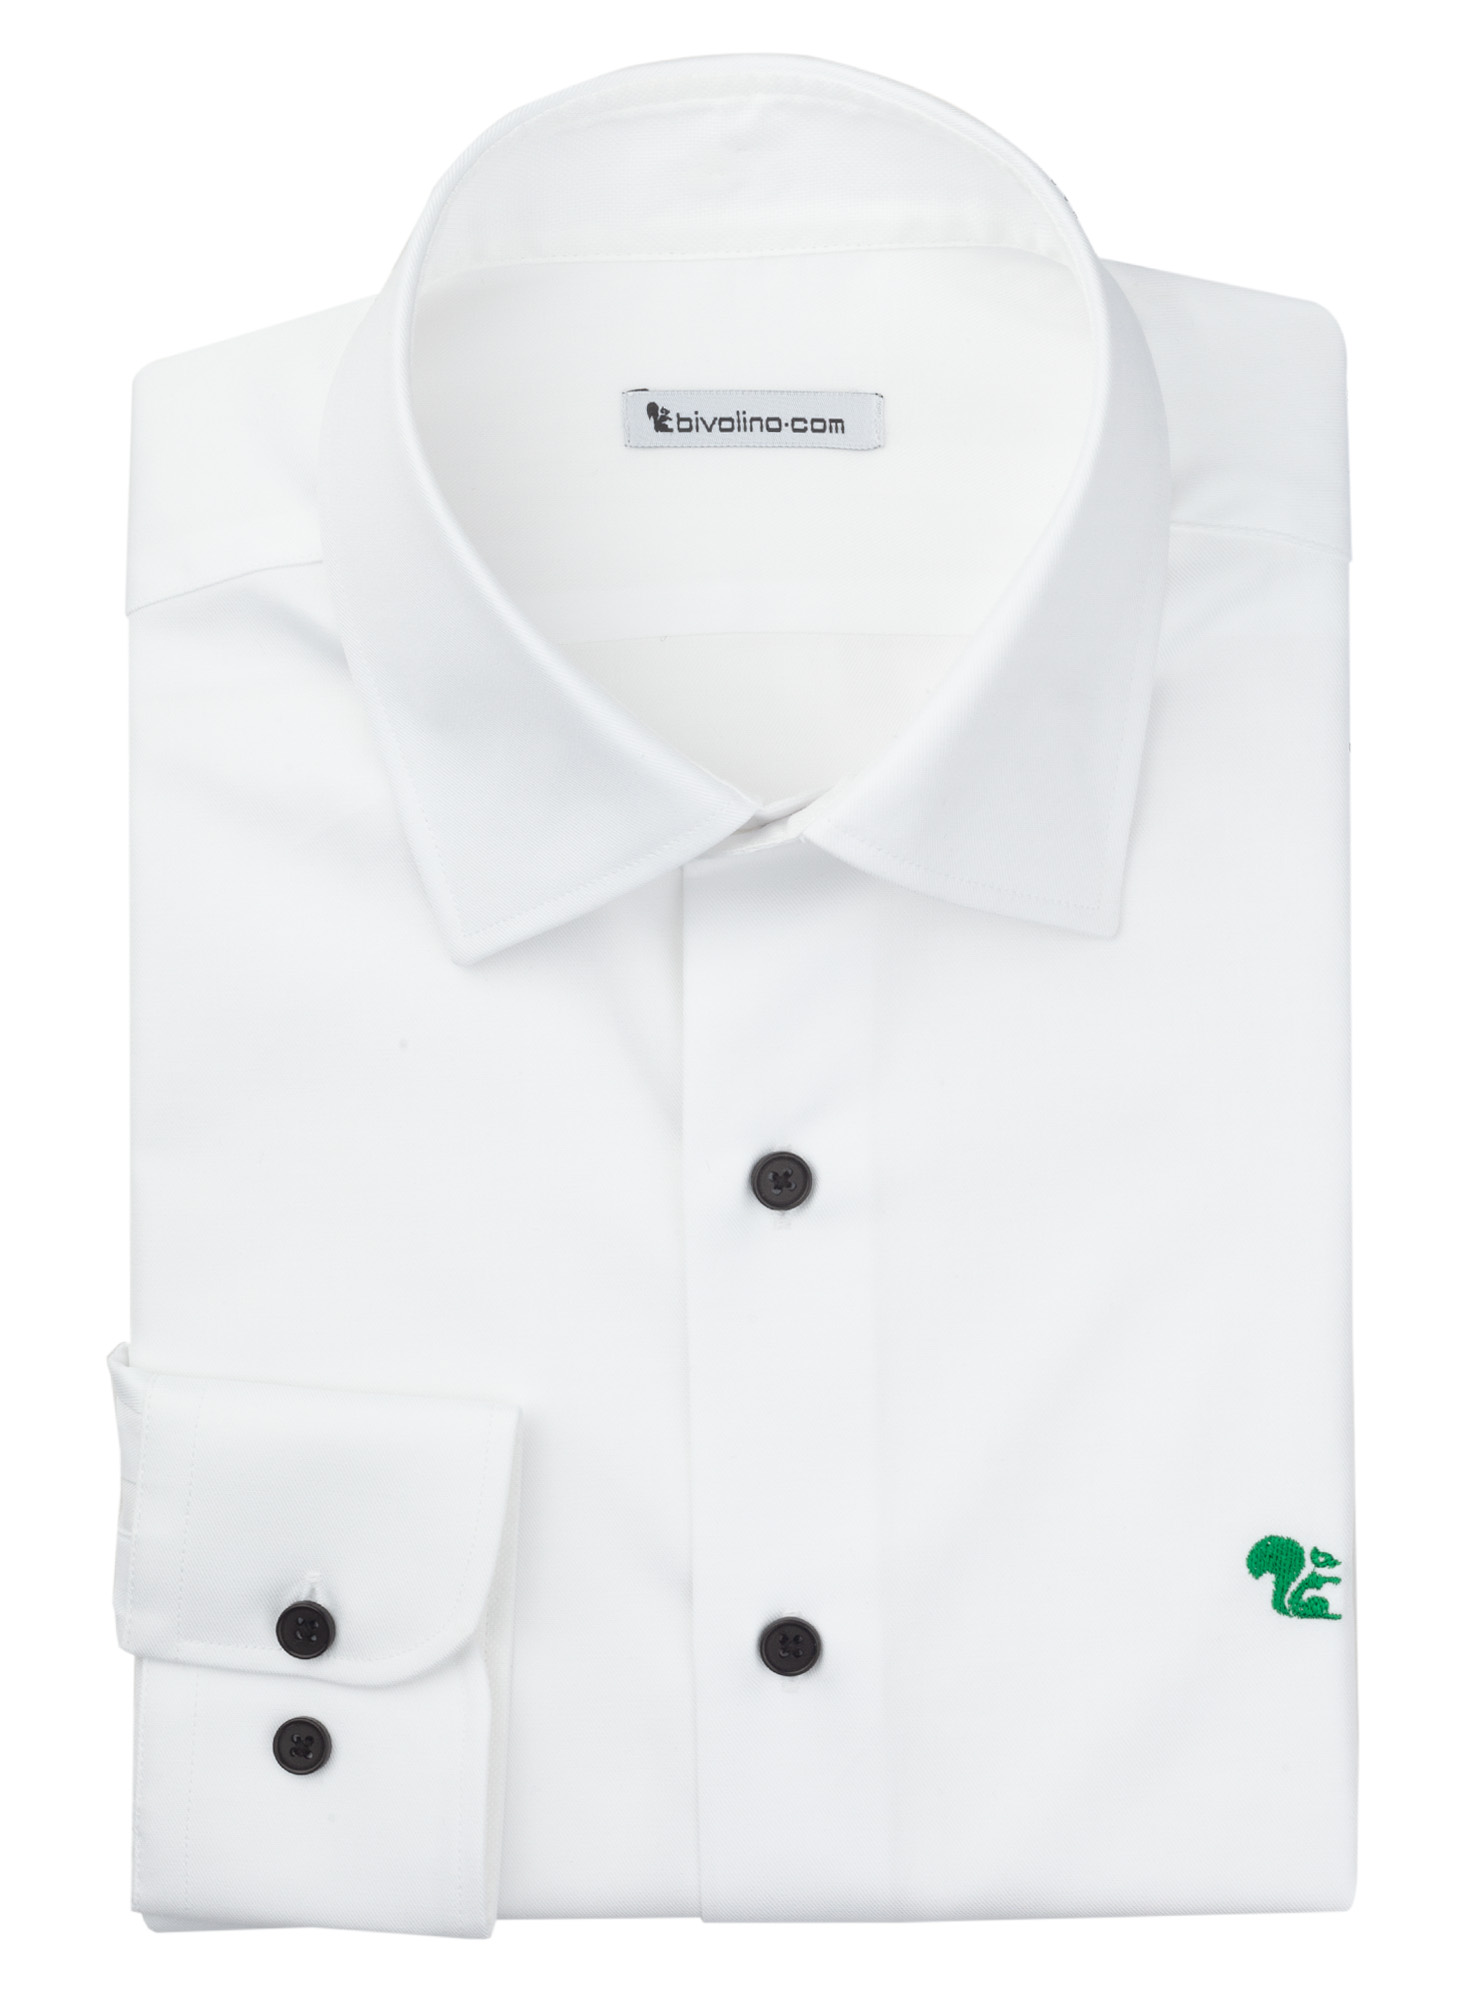 BENEVENTO - chemise homme twill blanc - RIBU 1-THOMAS MASON